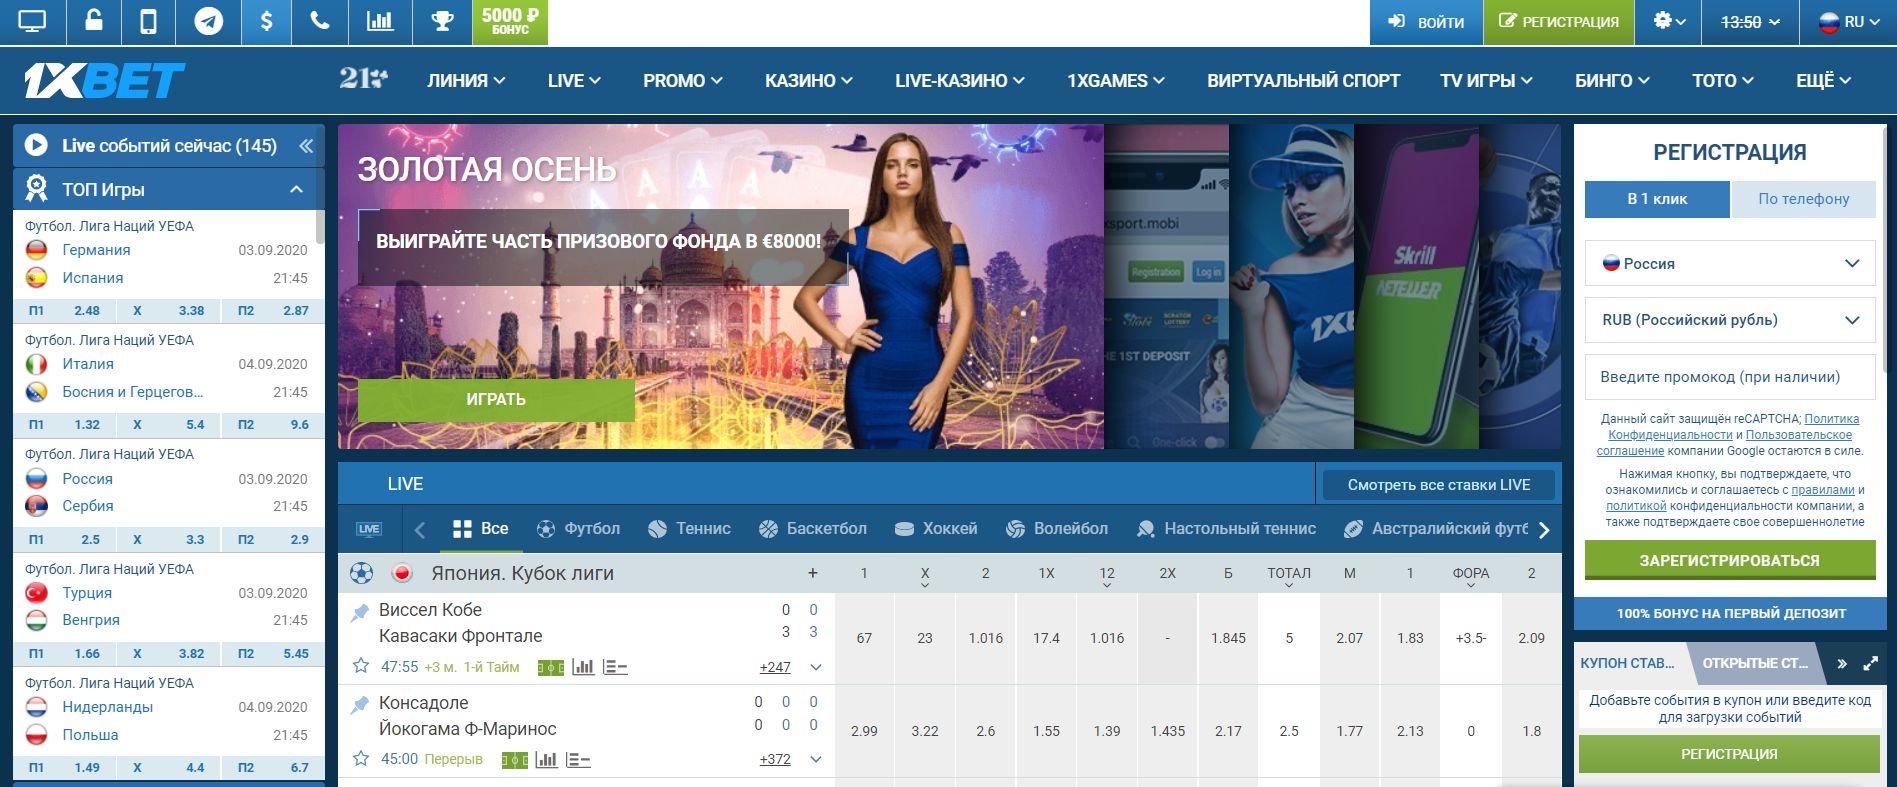 Онлайн букмекерская контора сделать ставку онлайн интернет казино онлайн на рубли